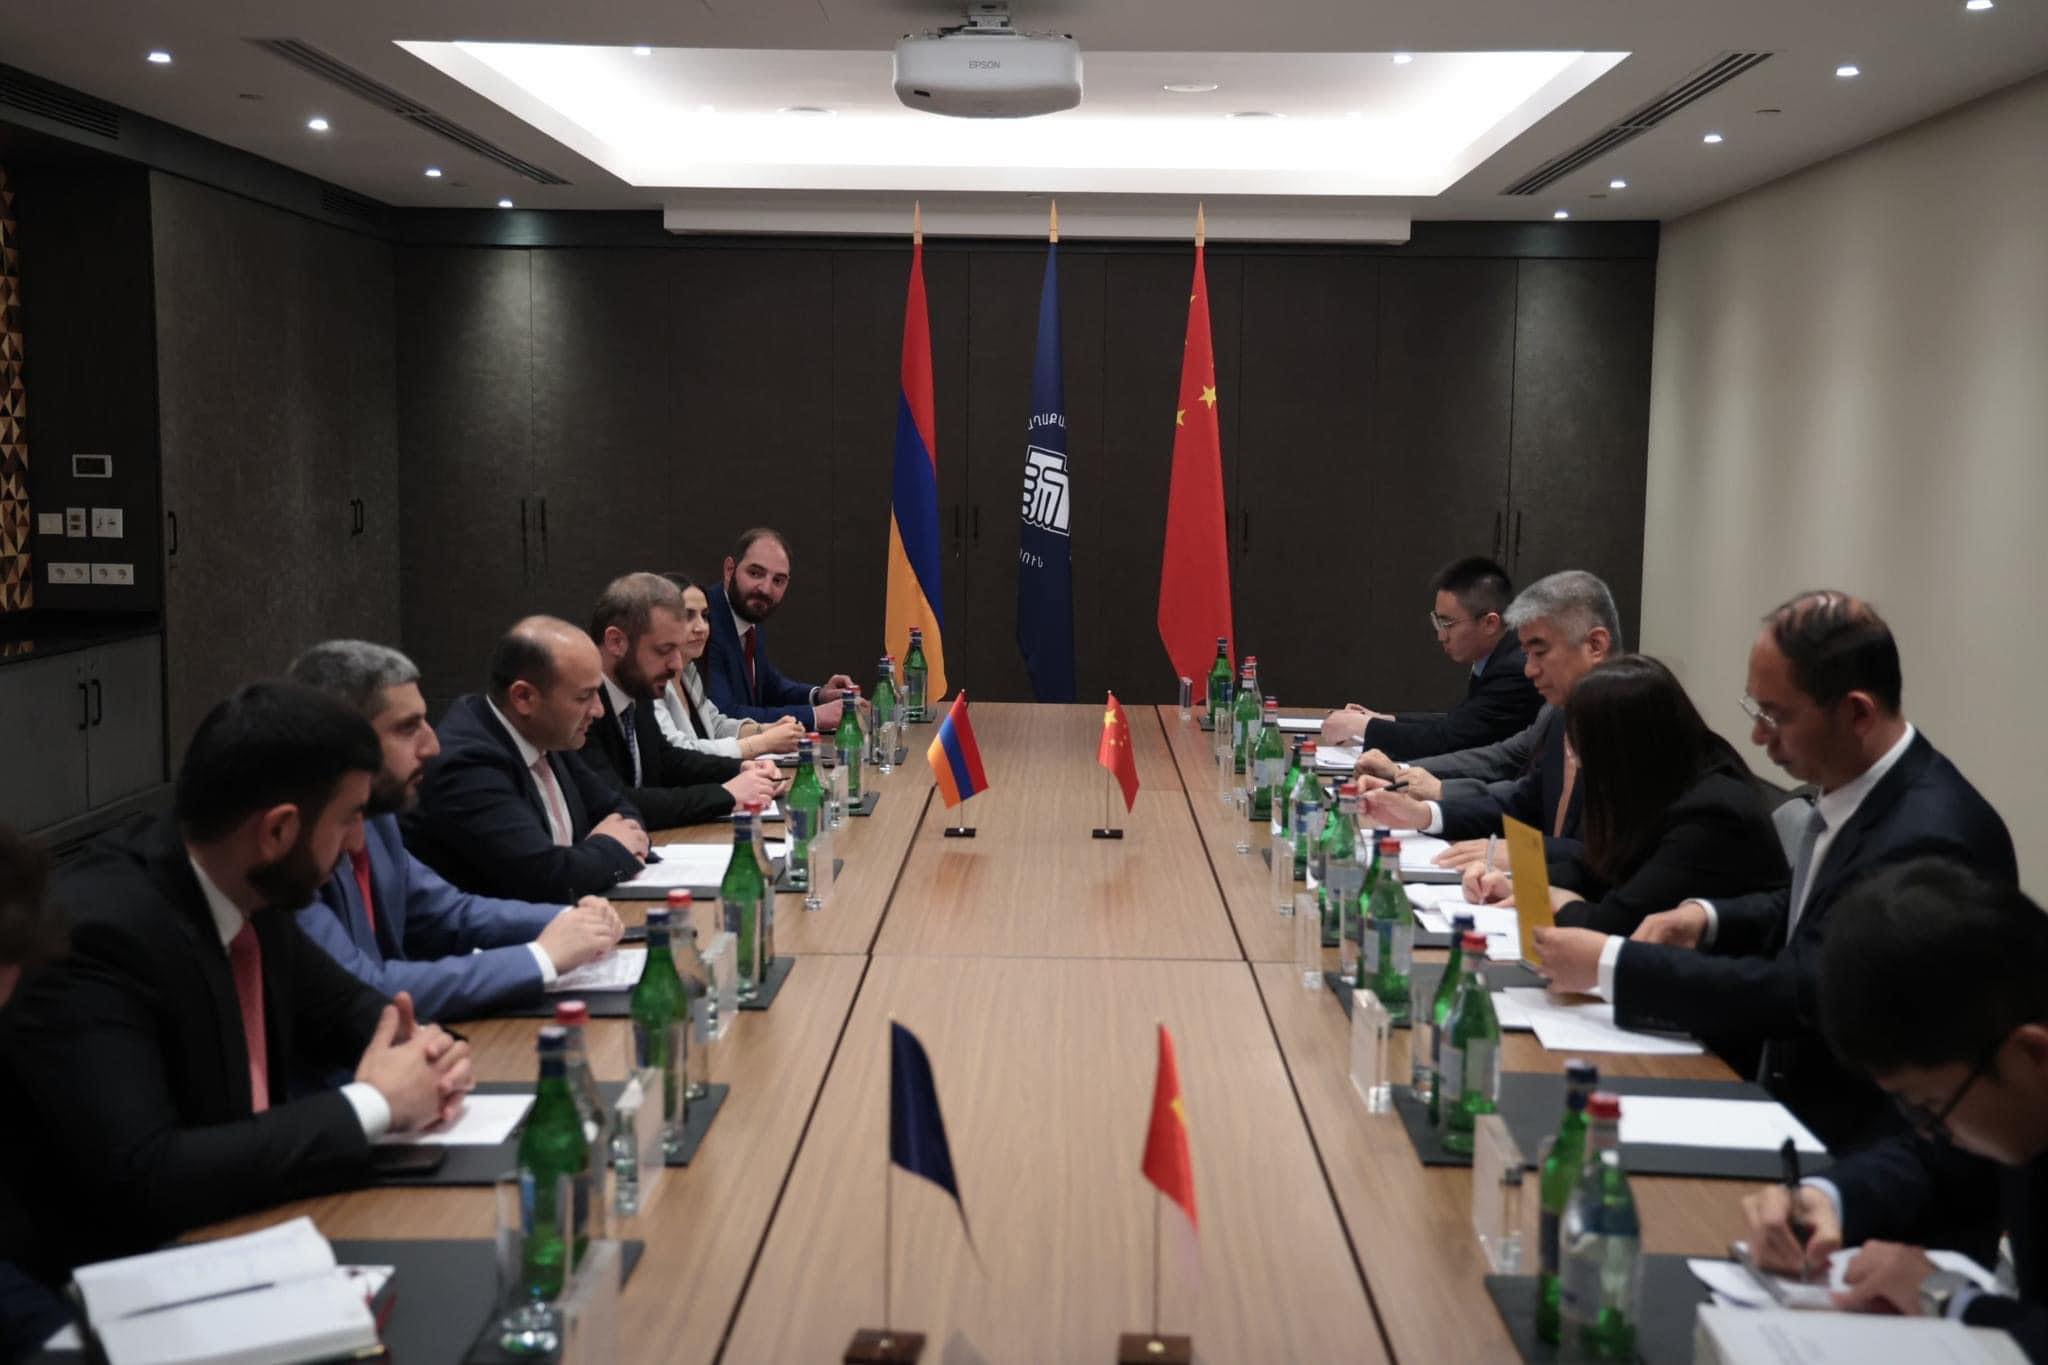 Հայաստան է այցելել Չինաստանի Կոմունիստական կուսակցության կենտրոնական կոմիտեի միջազգային վարչության փոխնախարար Չեն Ժունի գլխավորած պատվիրակությունը